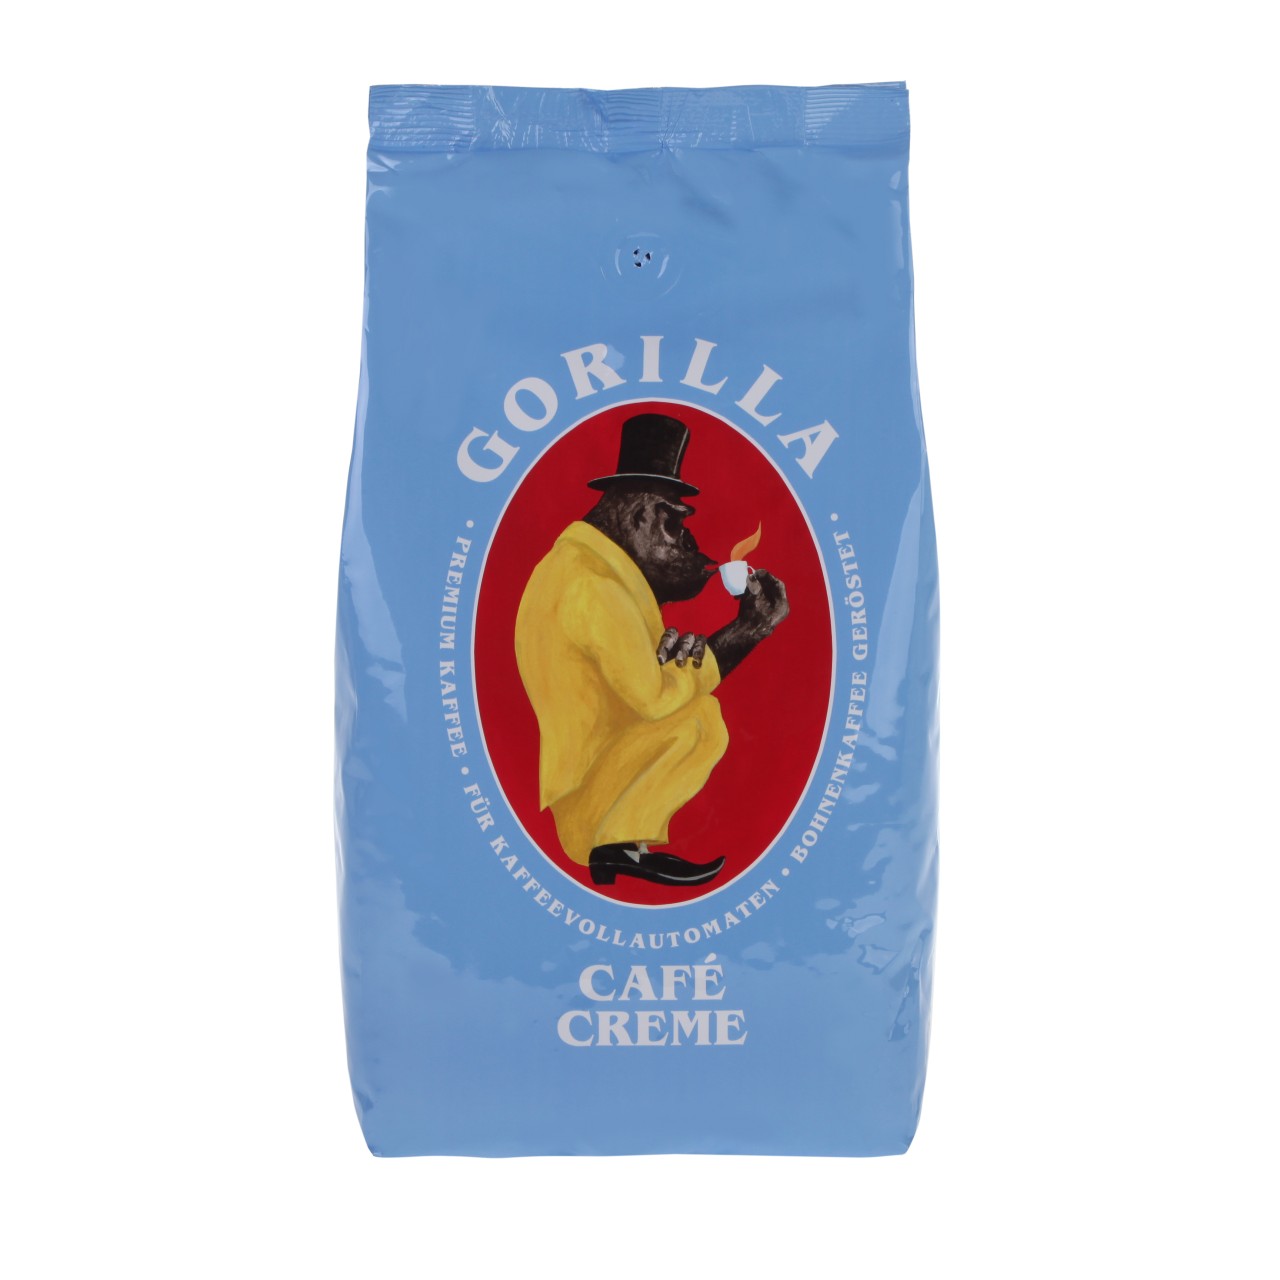 Gorilla Café Cream